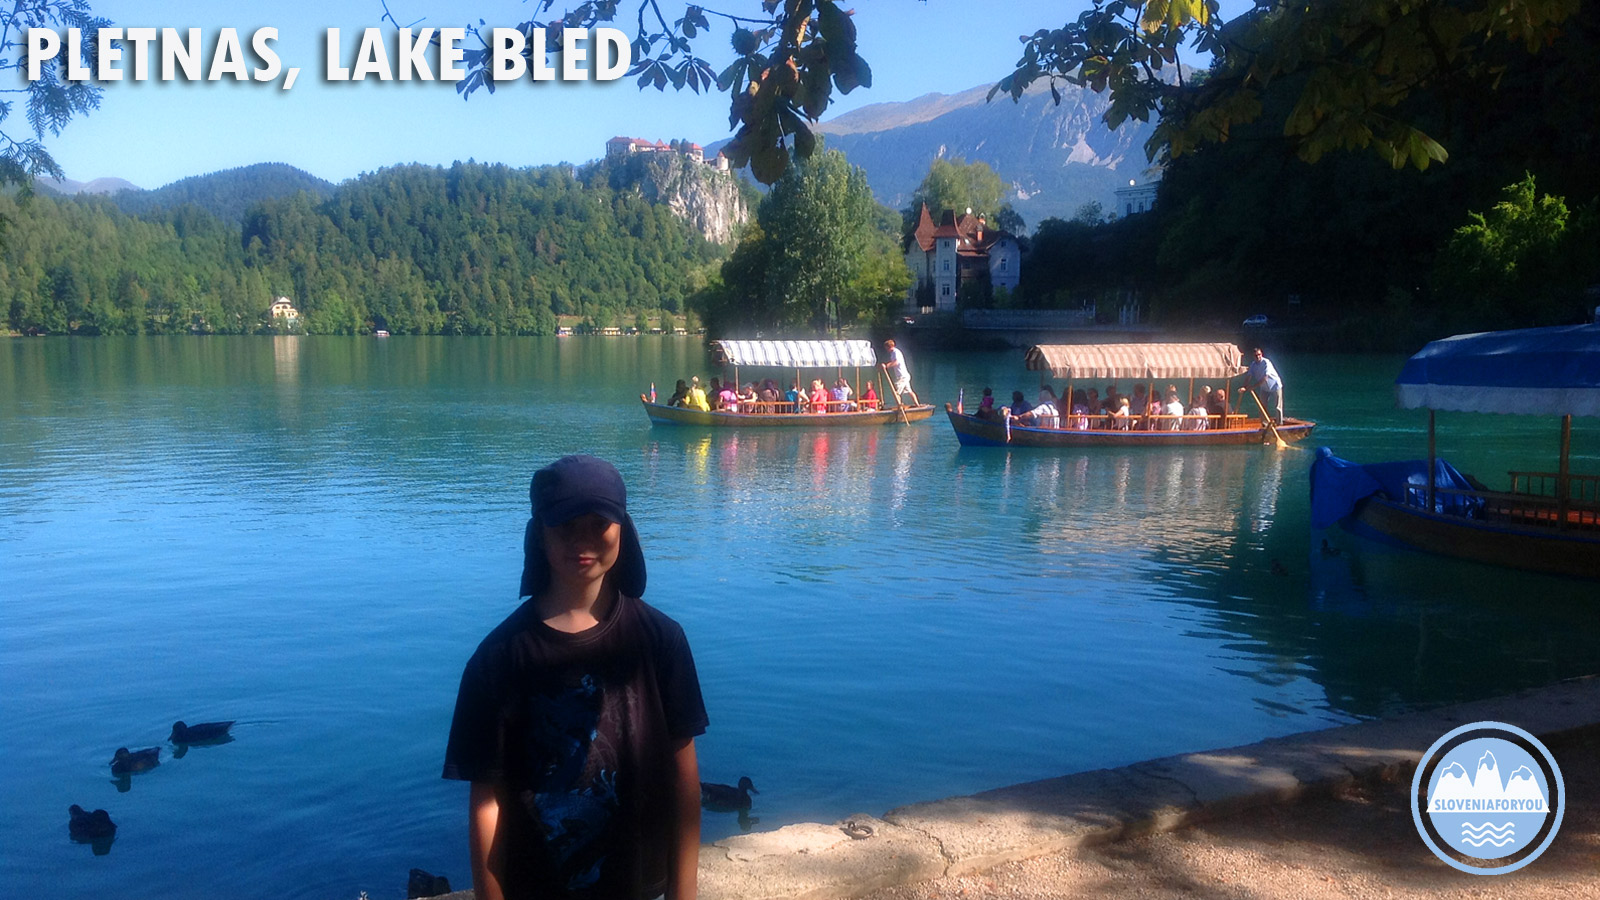 Lake Bled Pletnas_Sloveniaforyou